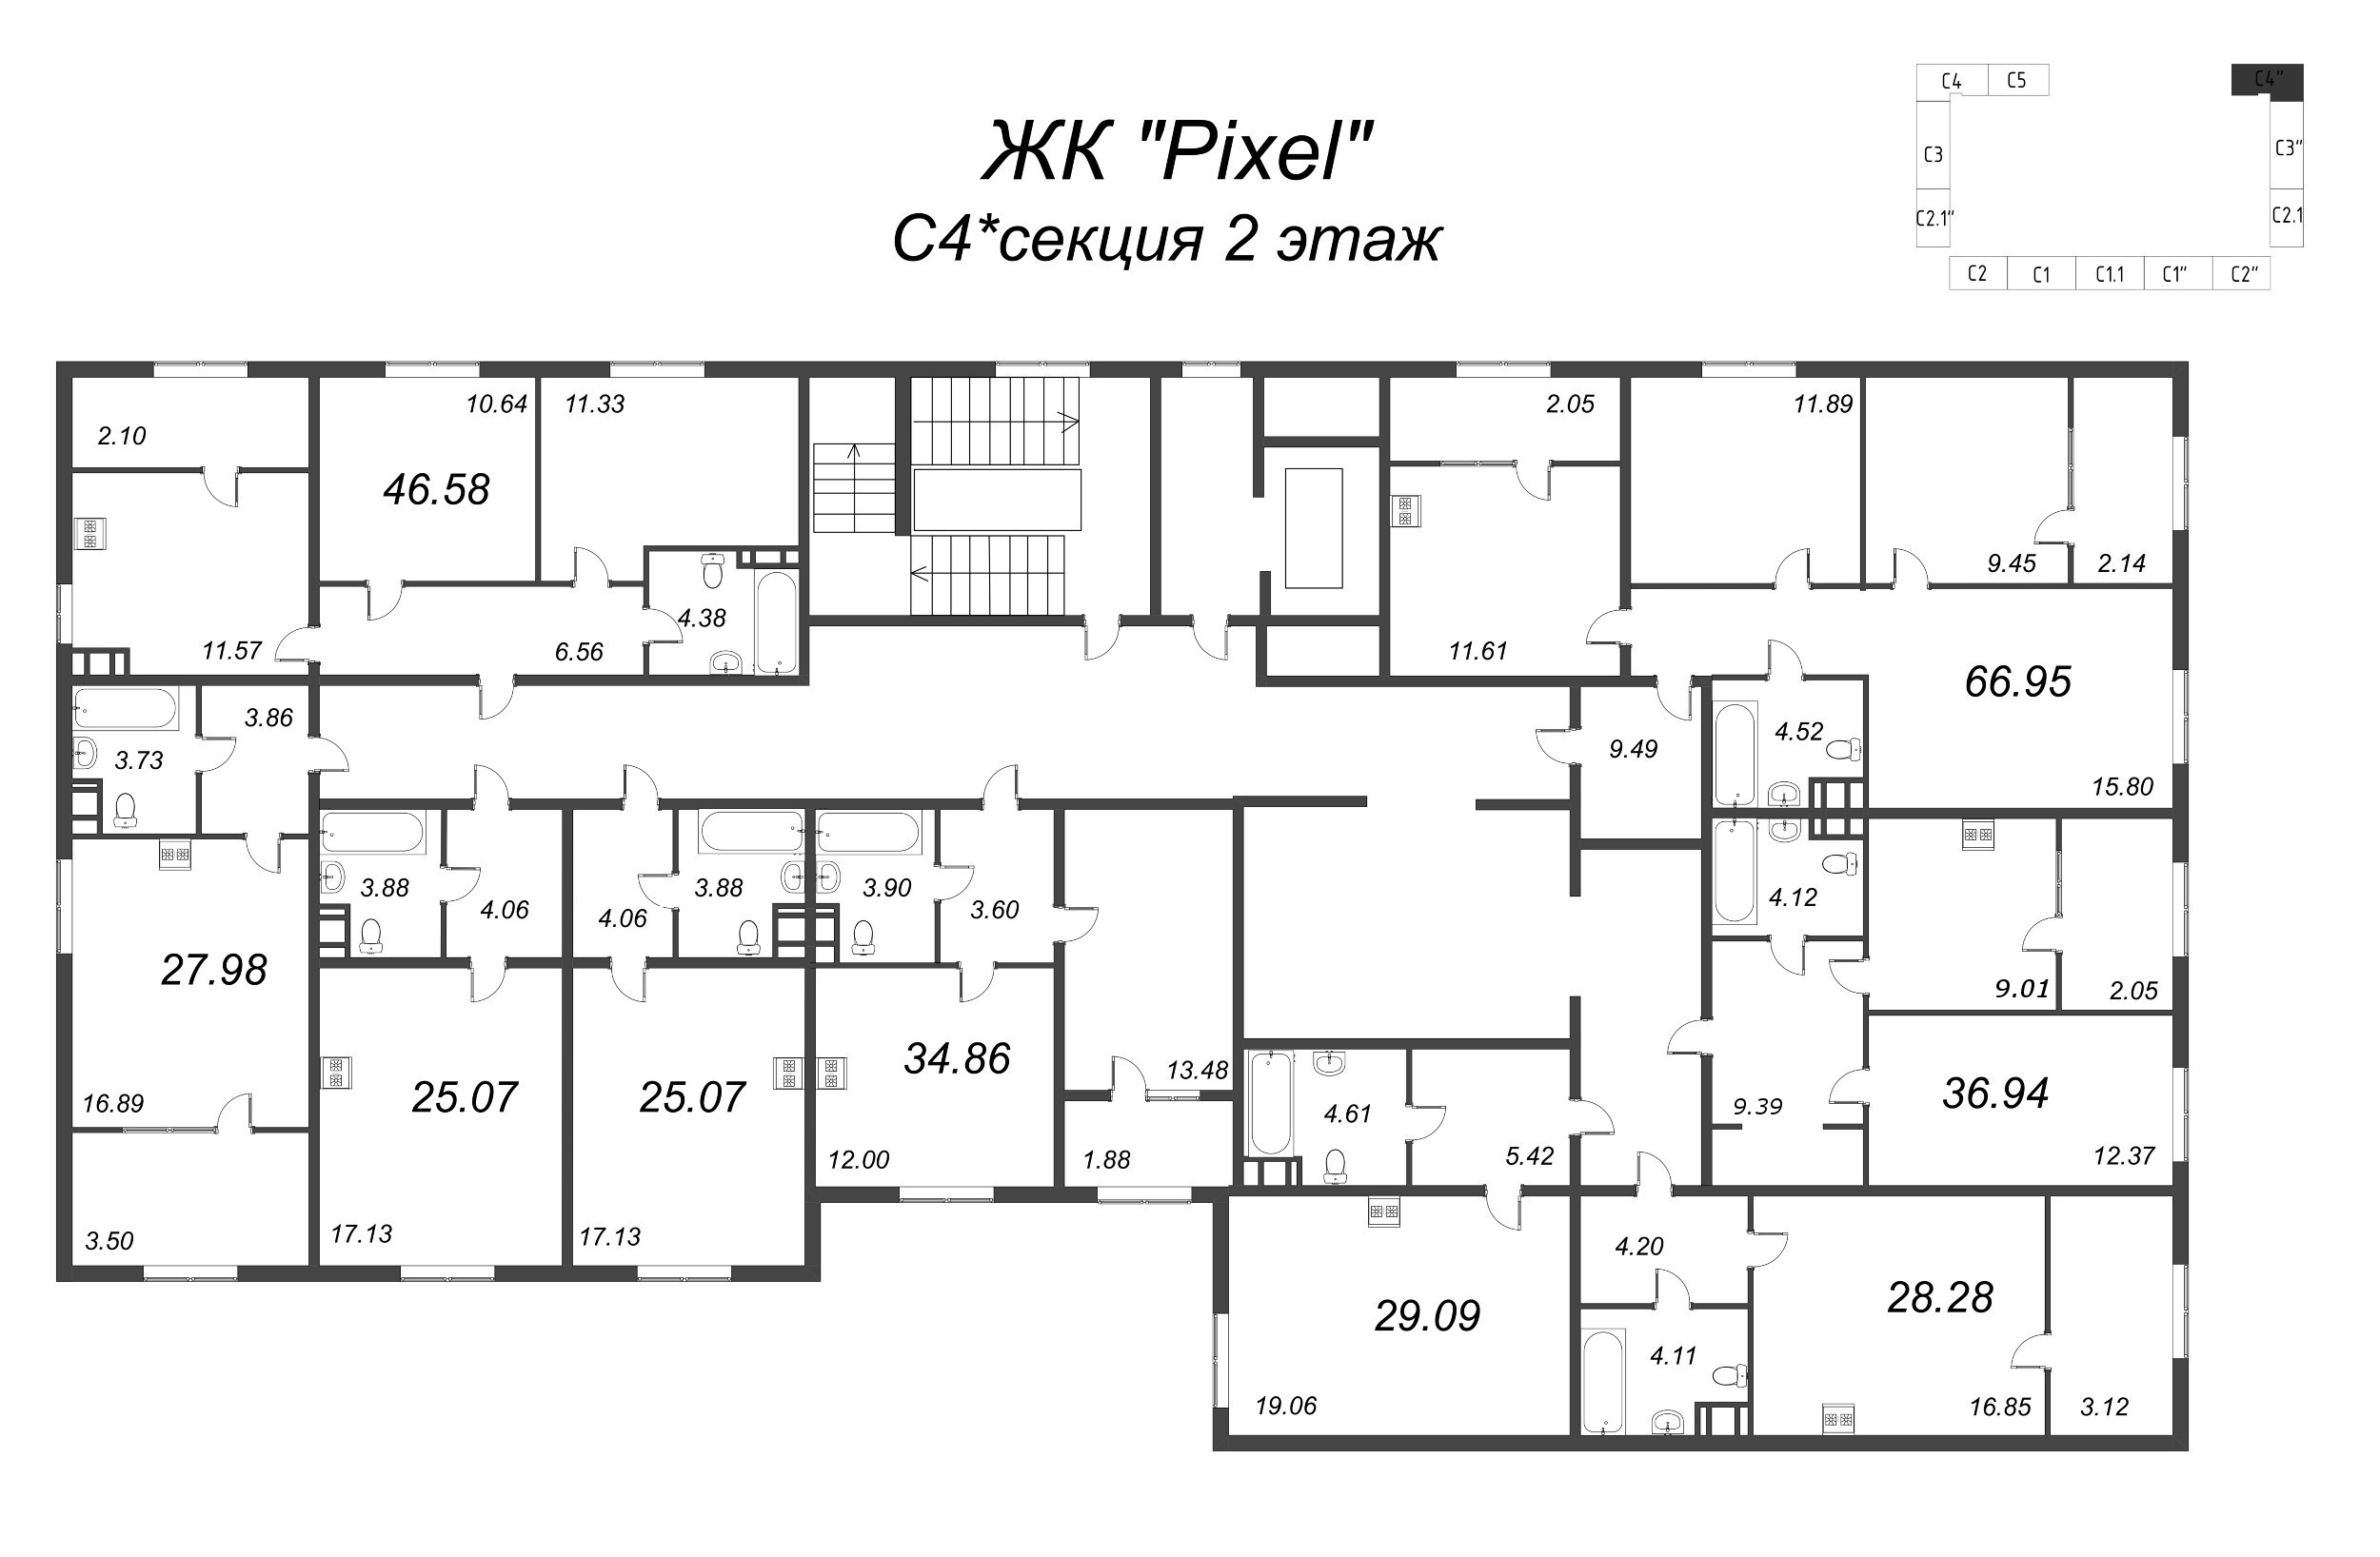 Квартира-студия, 25.07 м² в ЖК "Pixel" - планировка этажа